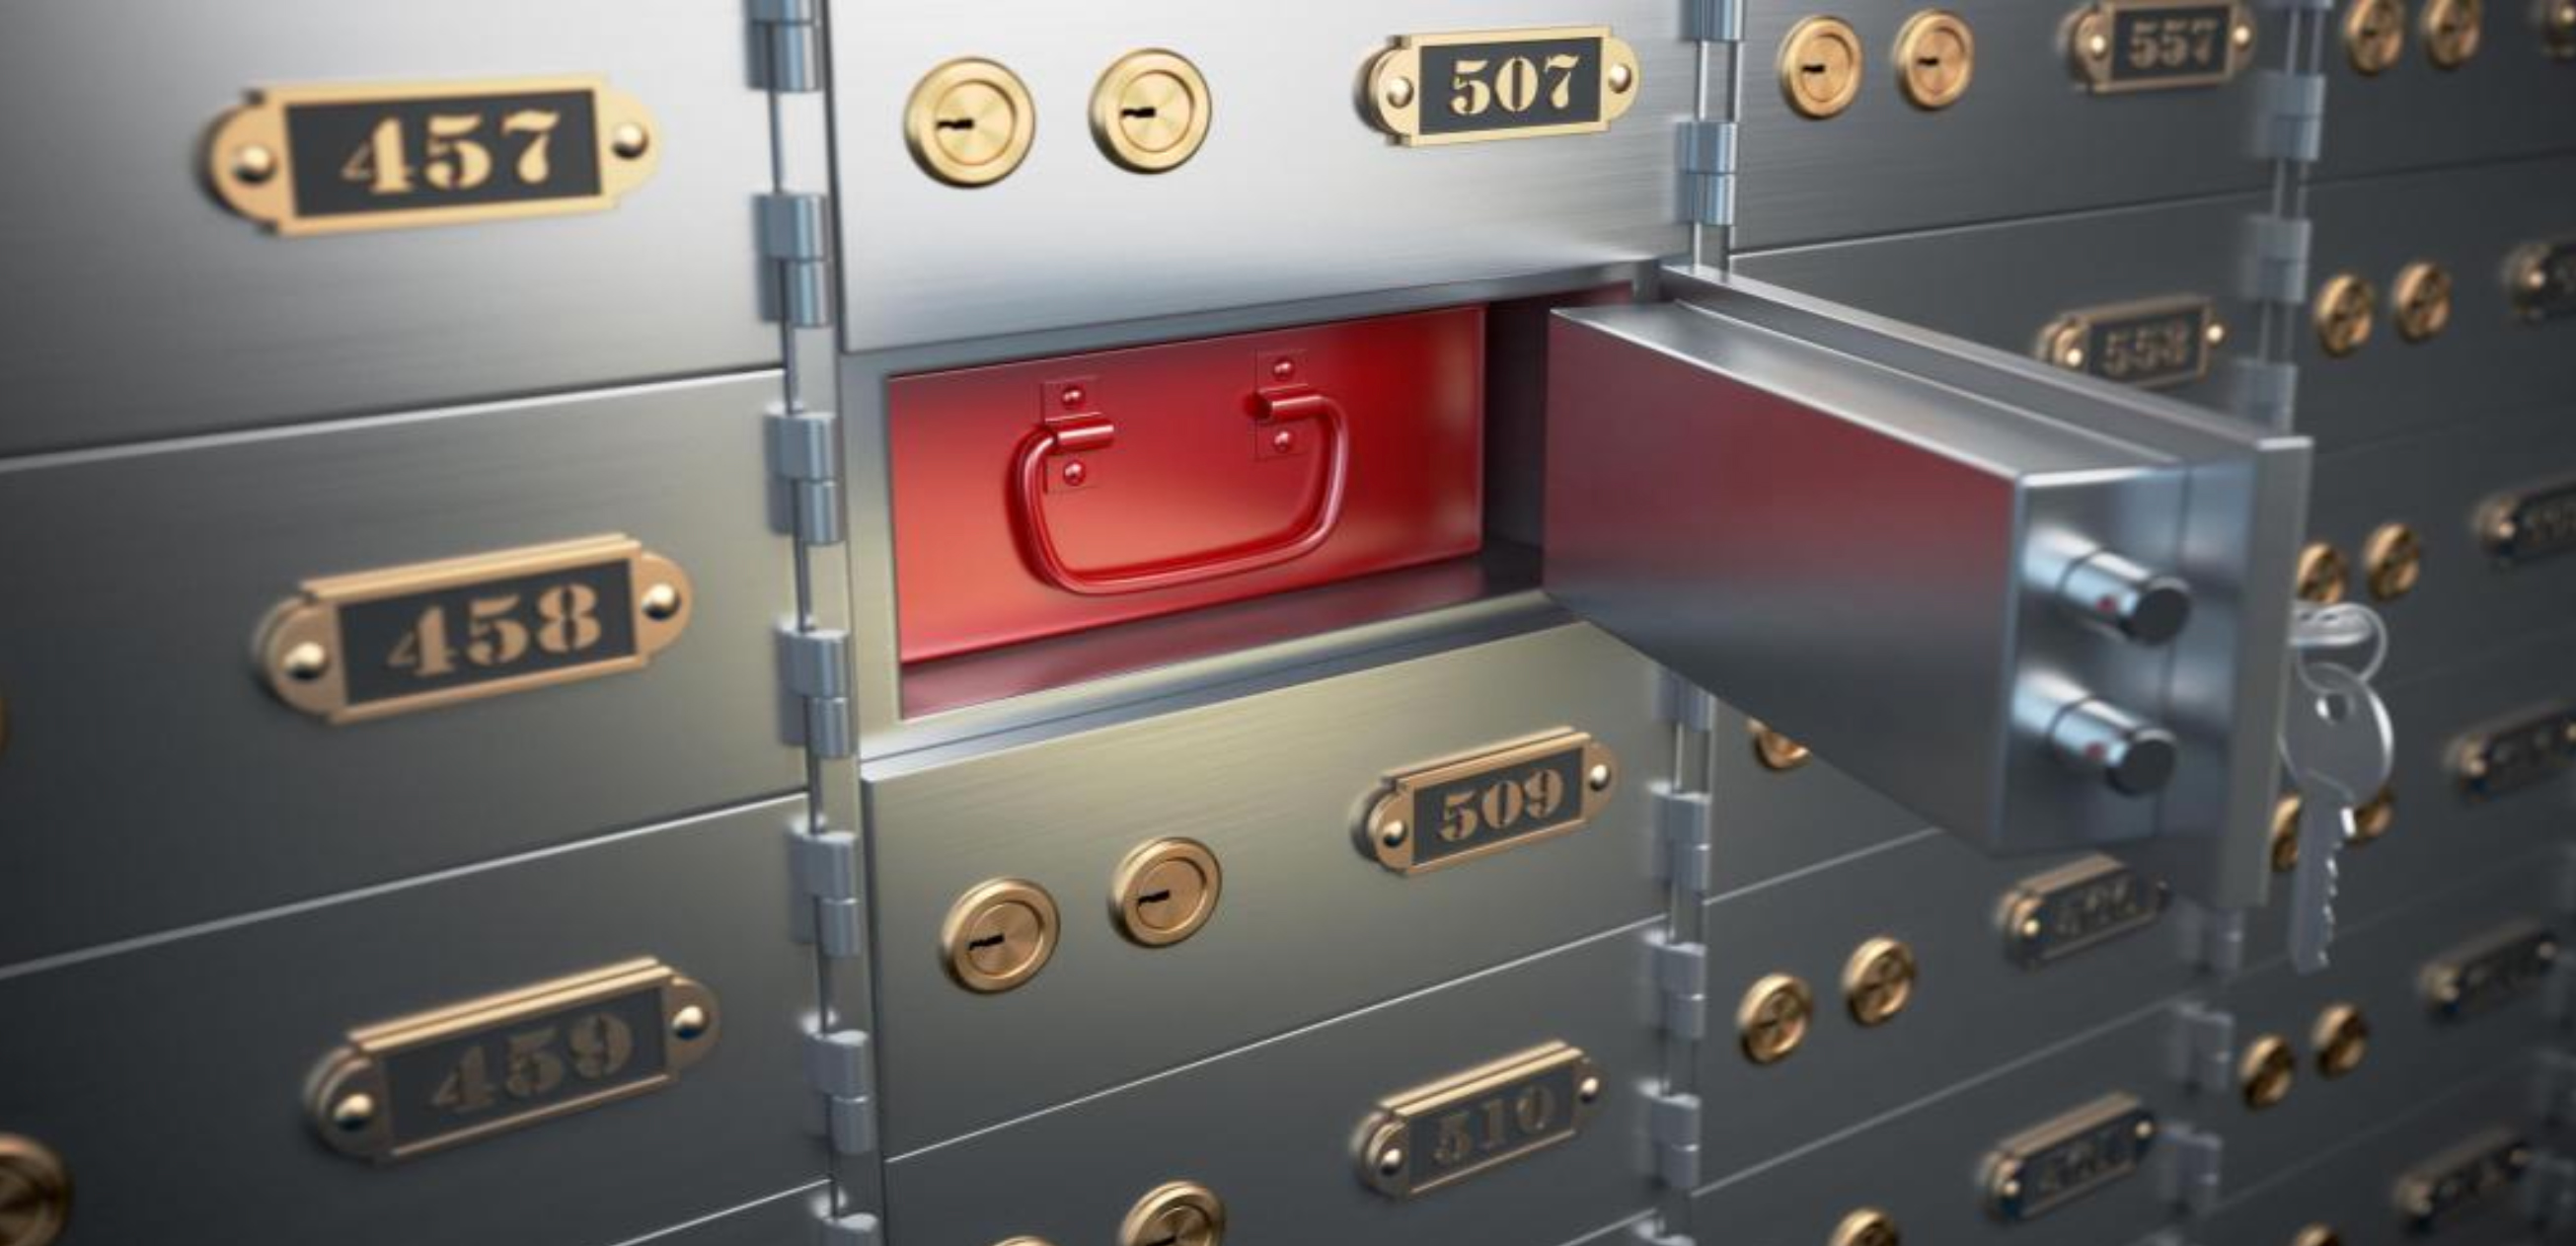 Банковская ячейка – это Ваш личный сейф в банке. В ней можно хранить деньги, украшения, драгоценные металлы, документы – словом, любые ценные вещи.